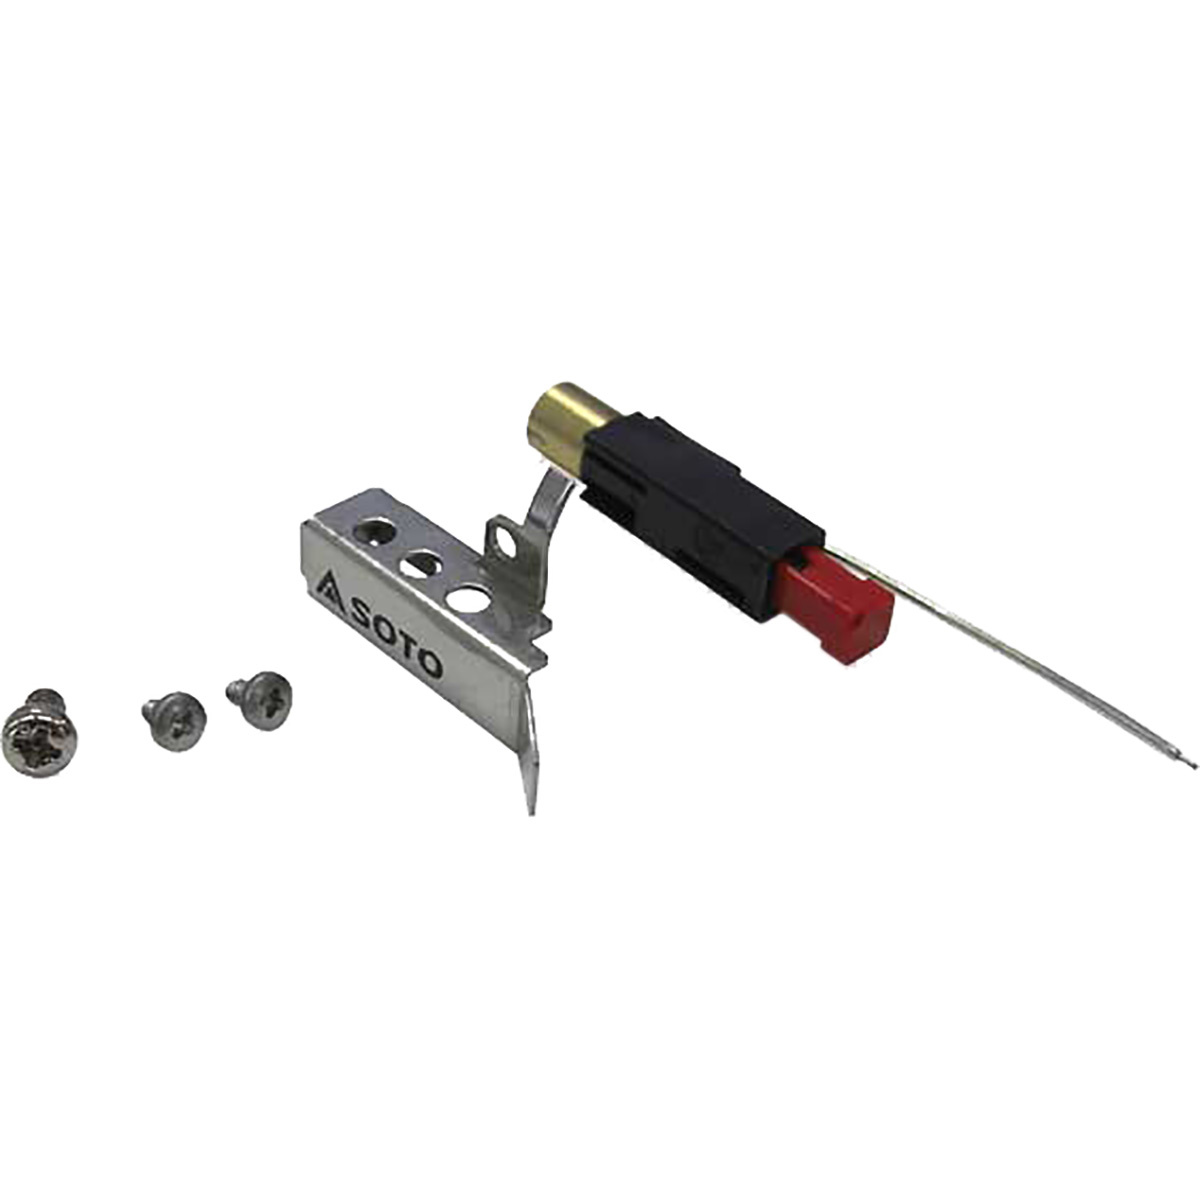 Image of Soto Micro Regulator Repair Kit